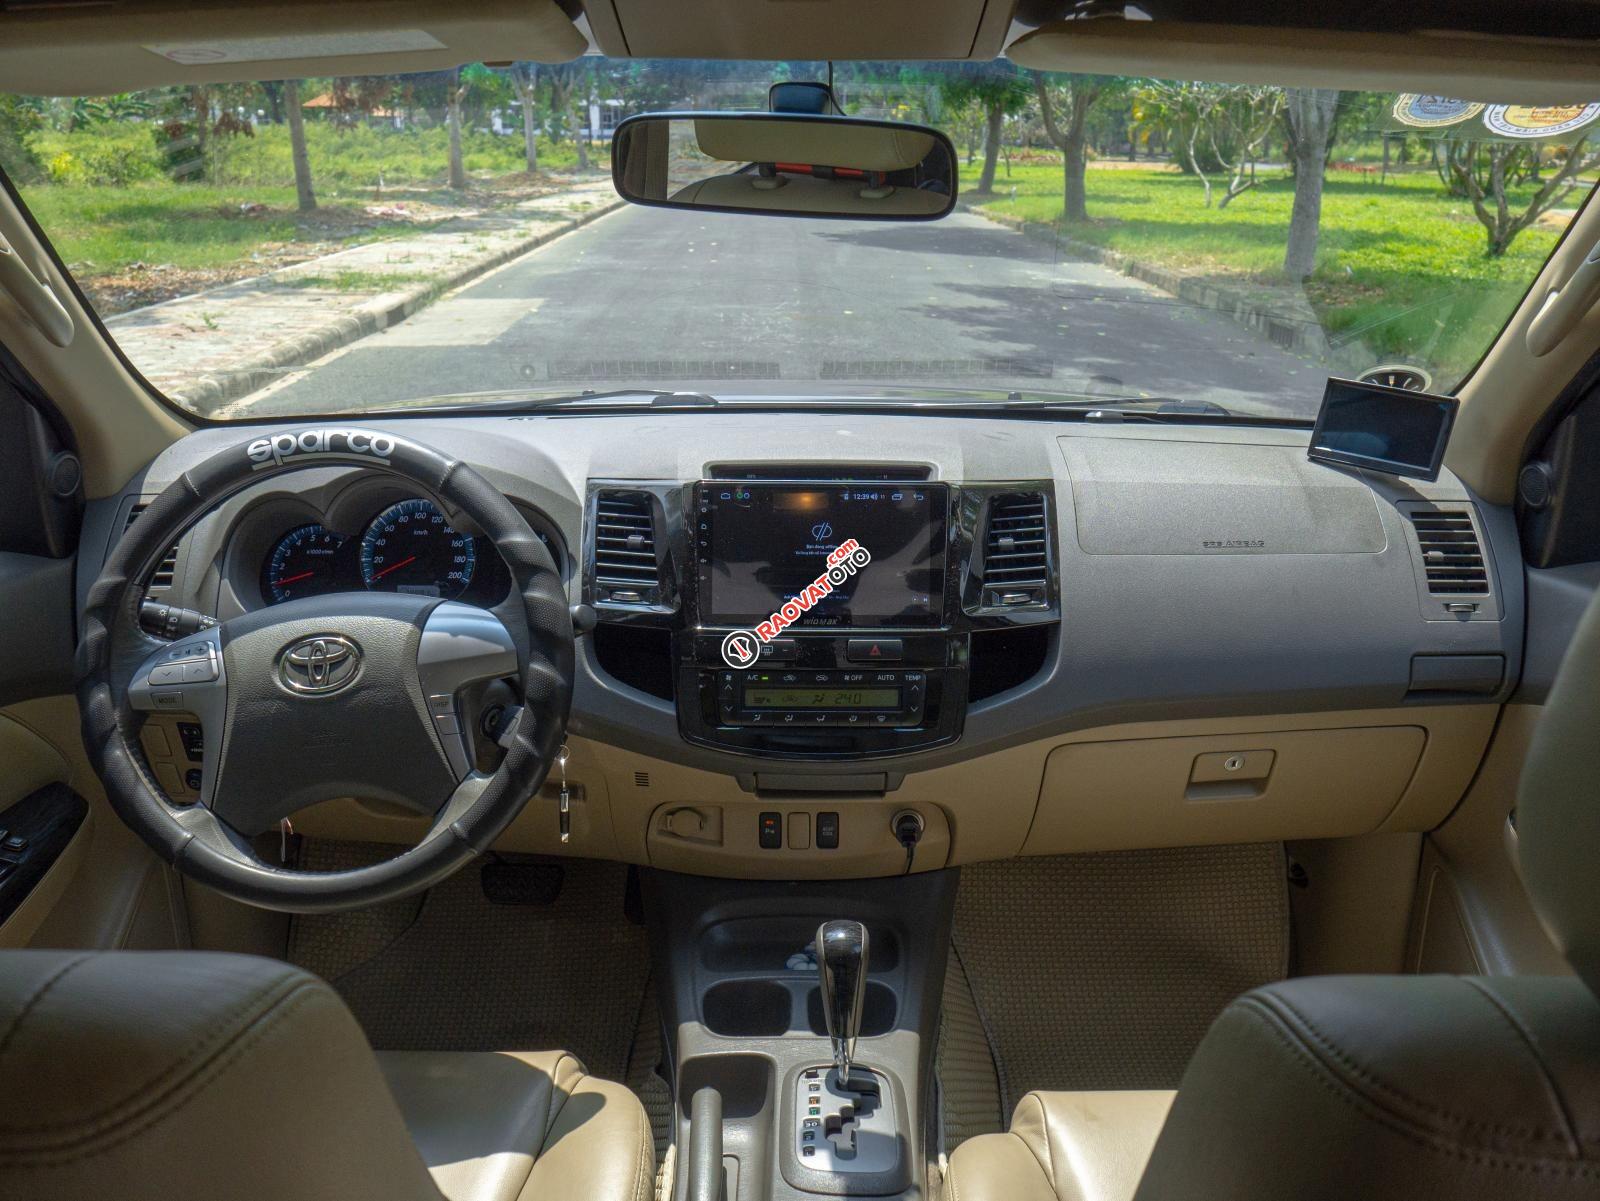 Cần bán Toyota Fortuner 2.7V sản xuất 2013, đăng ký 2014. Xe ngon giá tốt chính chủ biển HCM-2